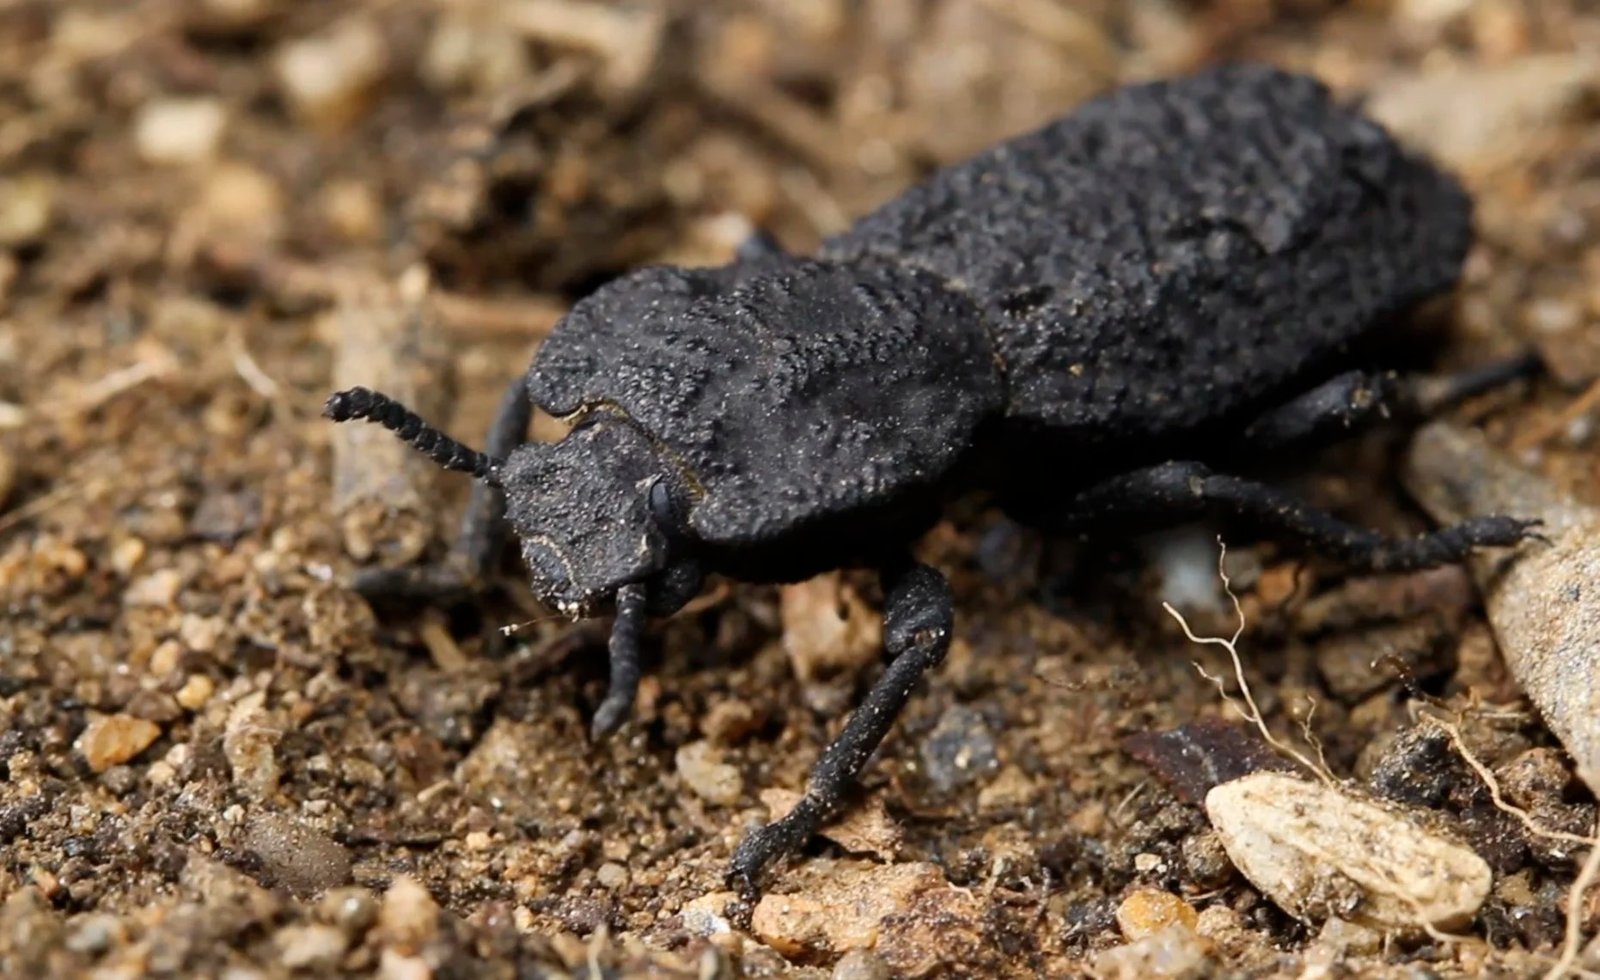 Escarabajos en México: portadores de hongos infecciosos para humanos